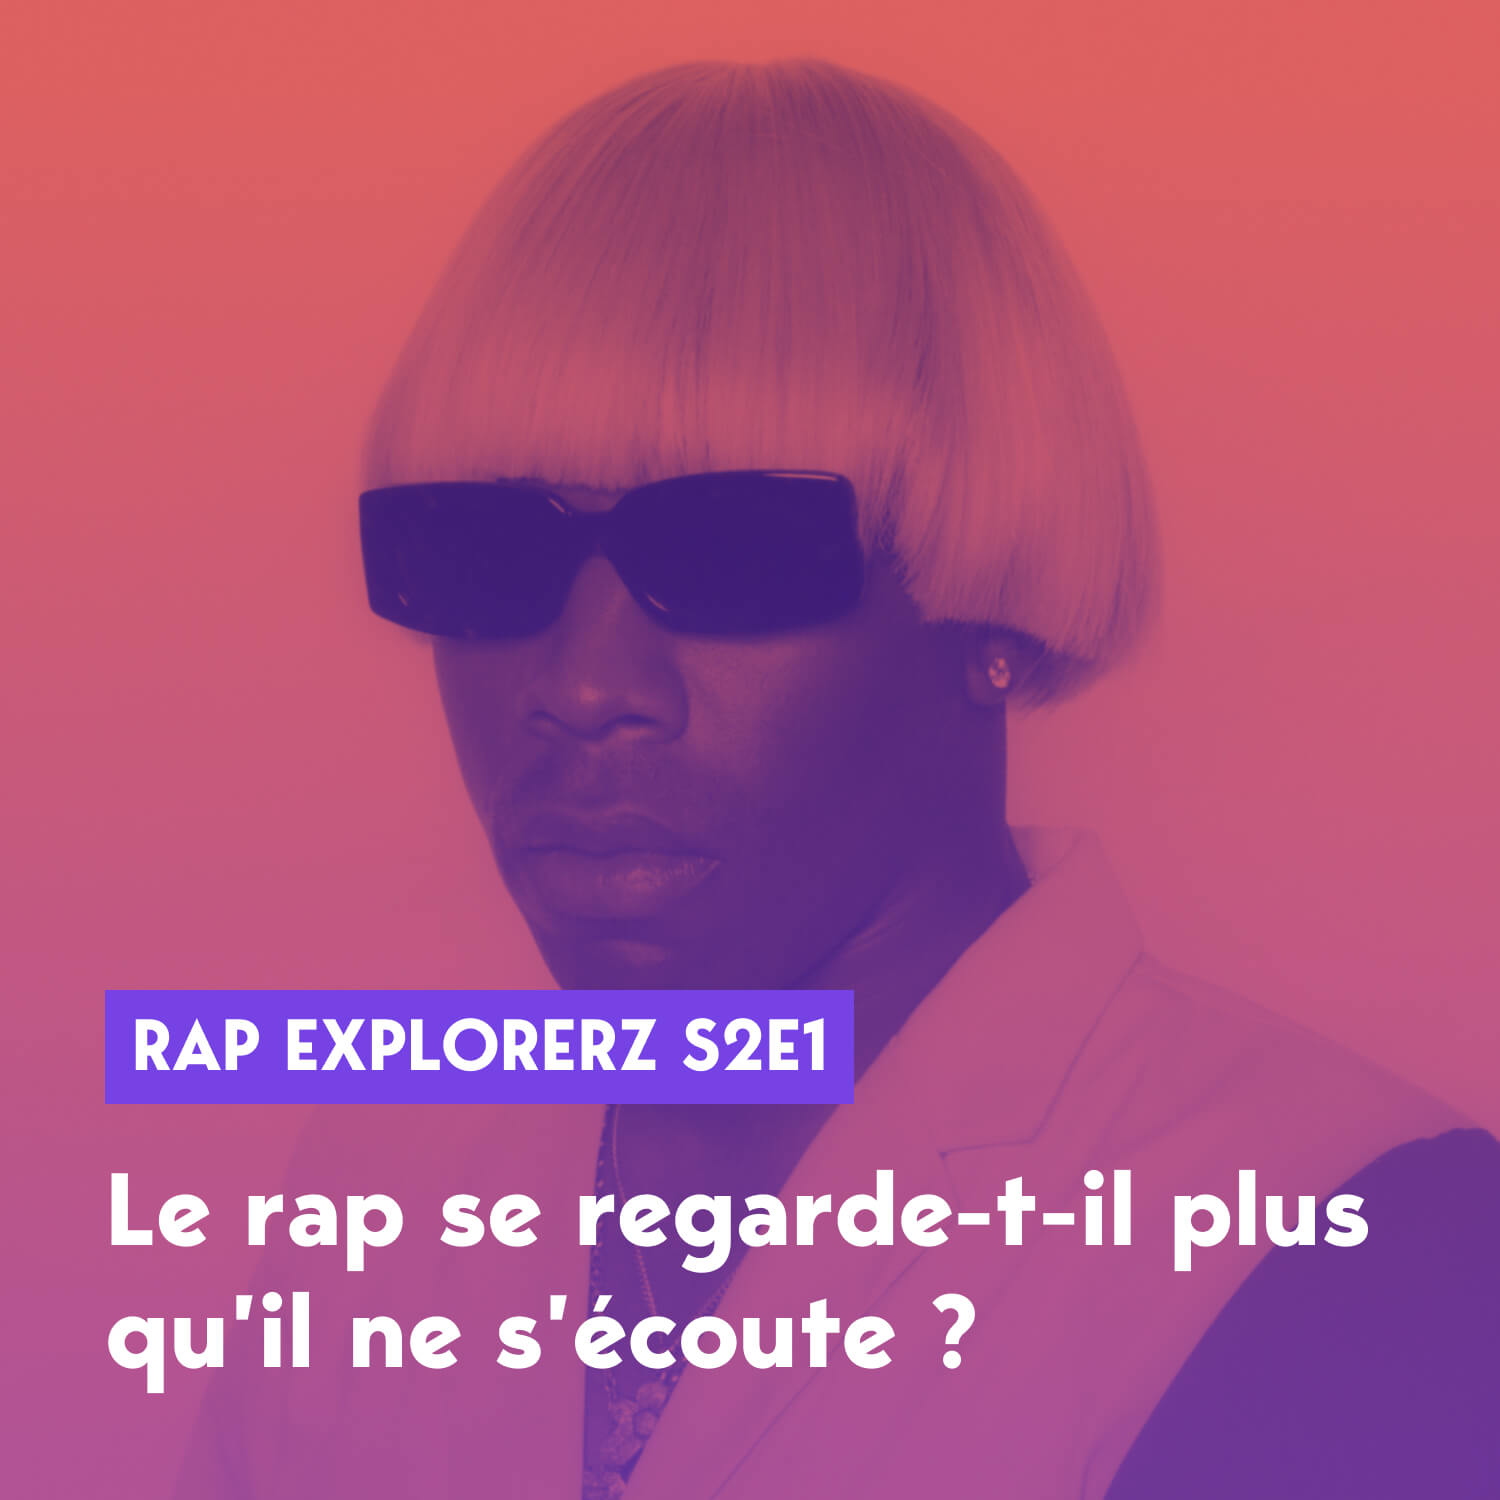 rap-explorerz-s2e1-image-rap